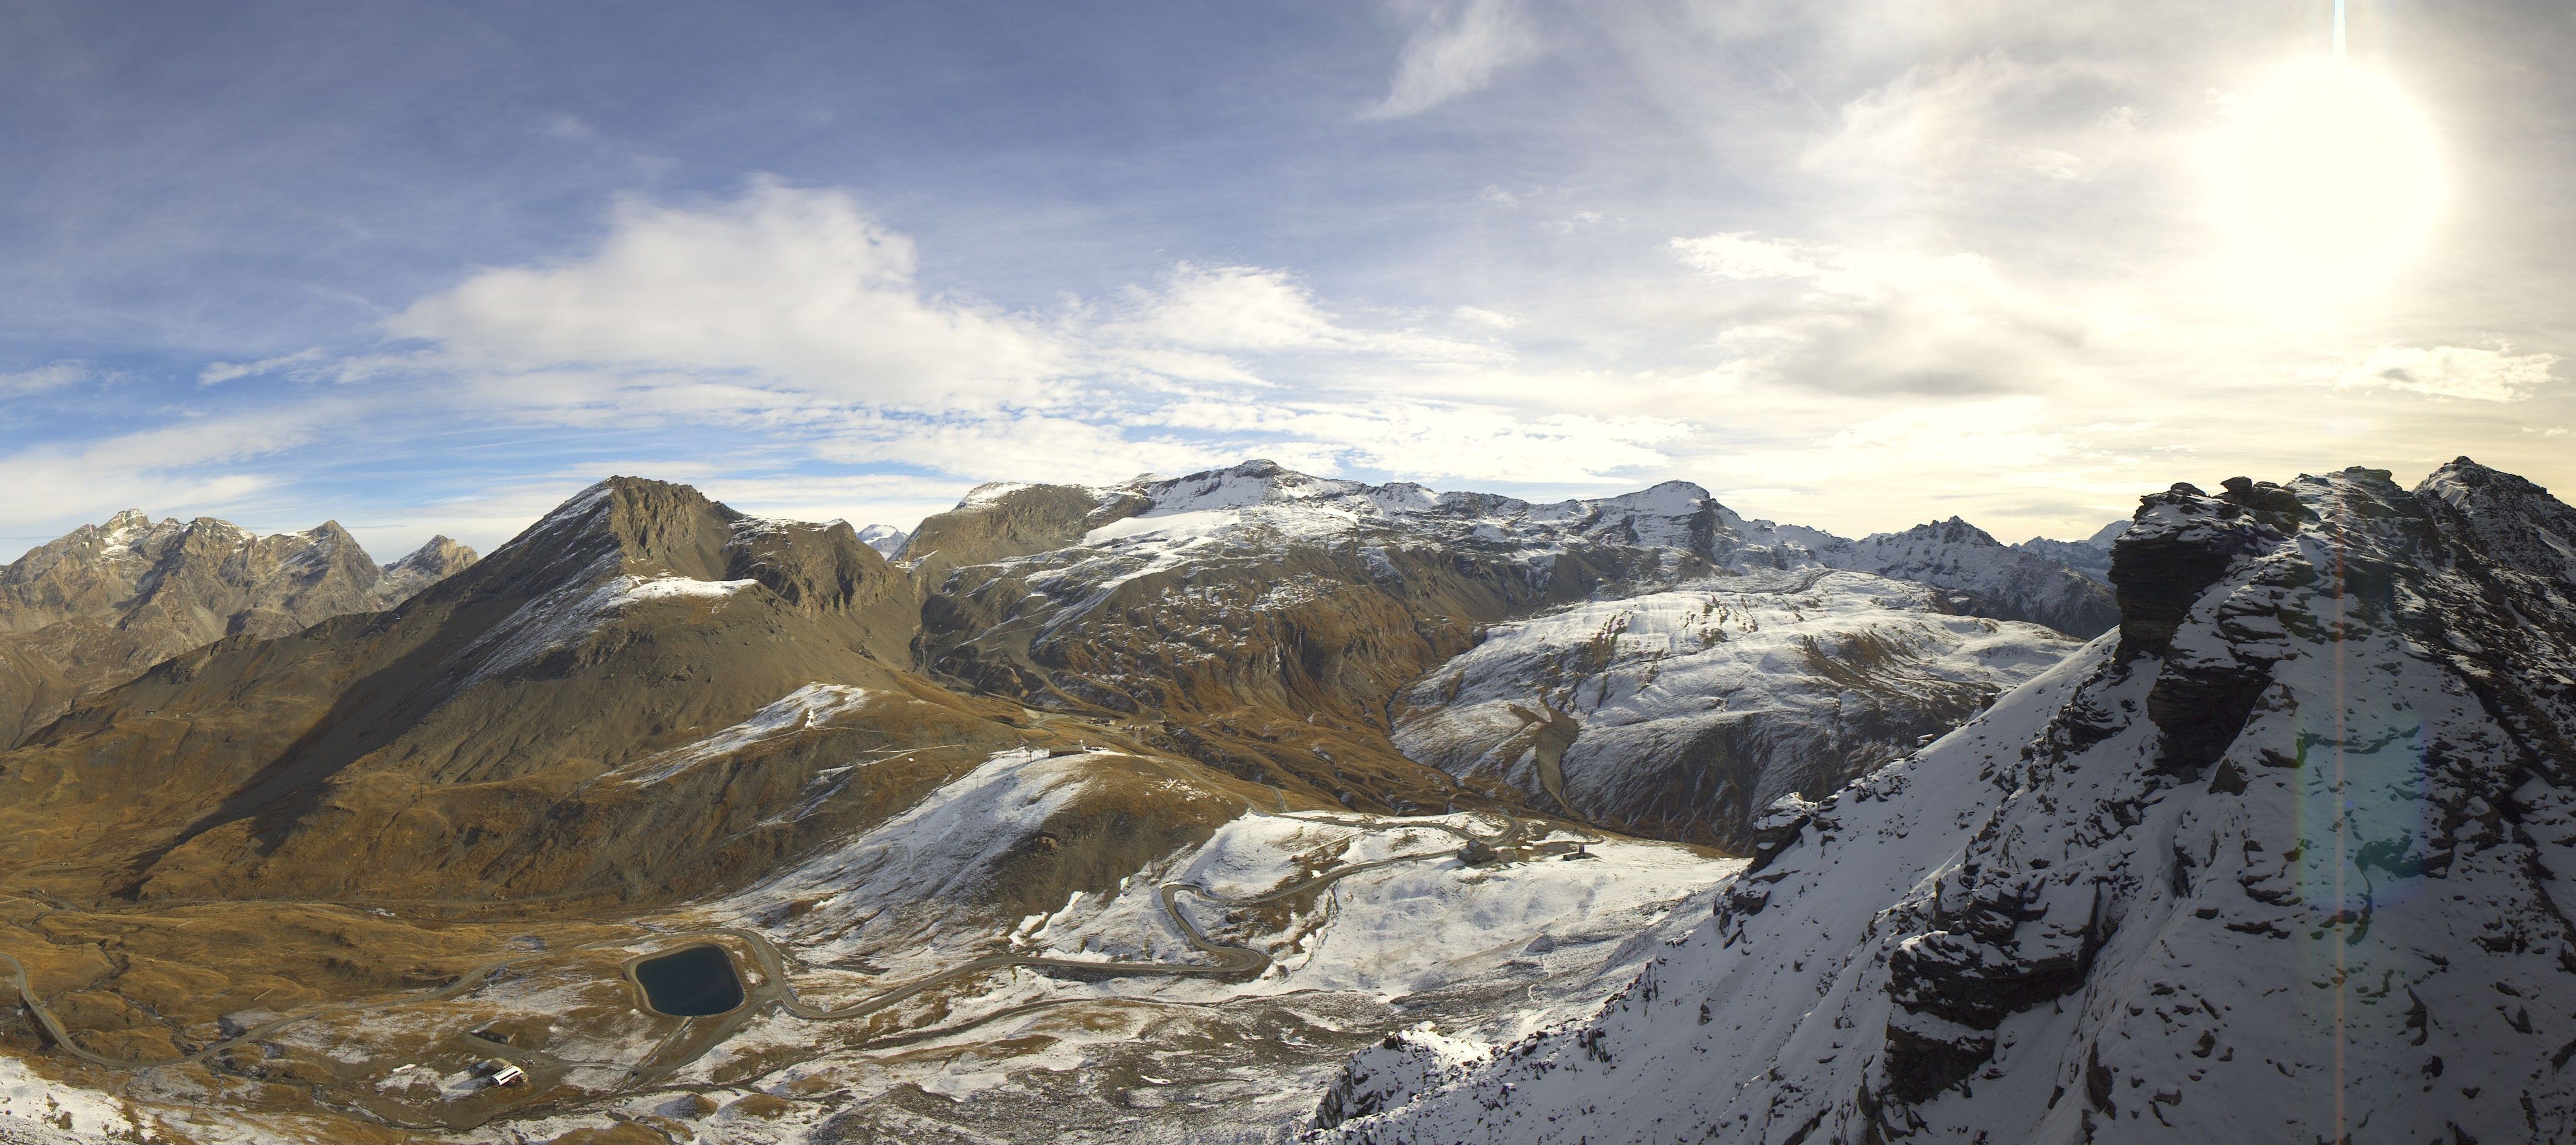 Ook in Val d'Isère is het nog droog, maar binnen enkele uren zal hier de eerste sneeuw gaan vallen (roundshot.com)